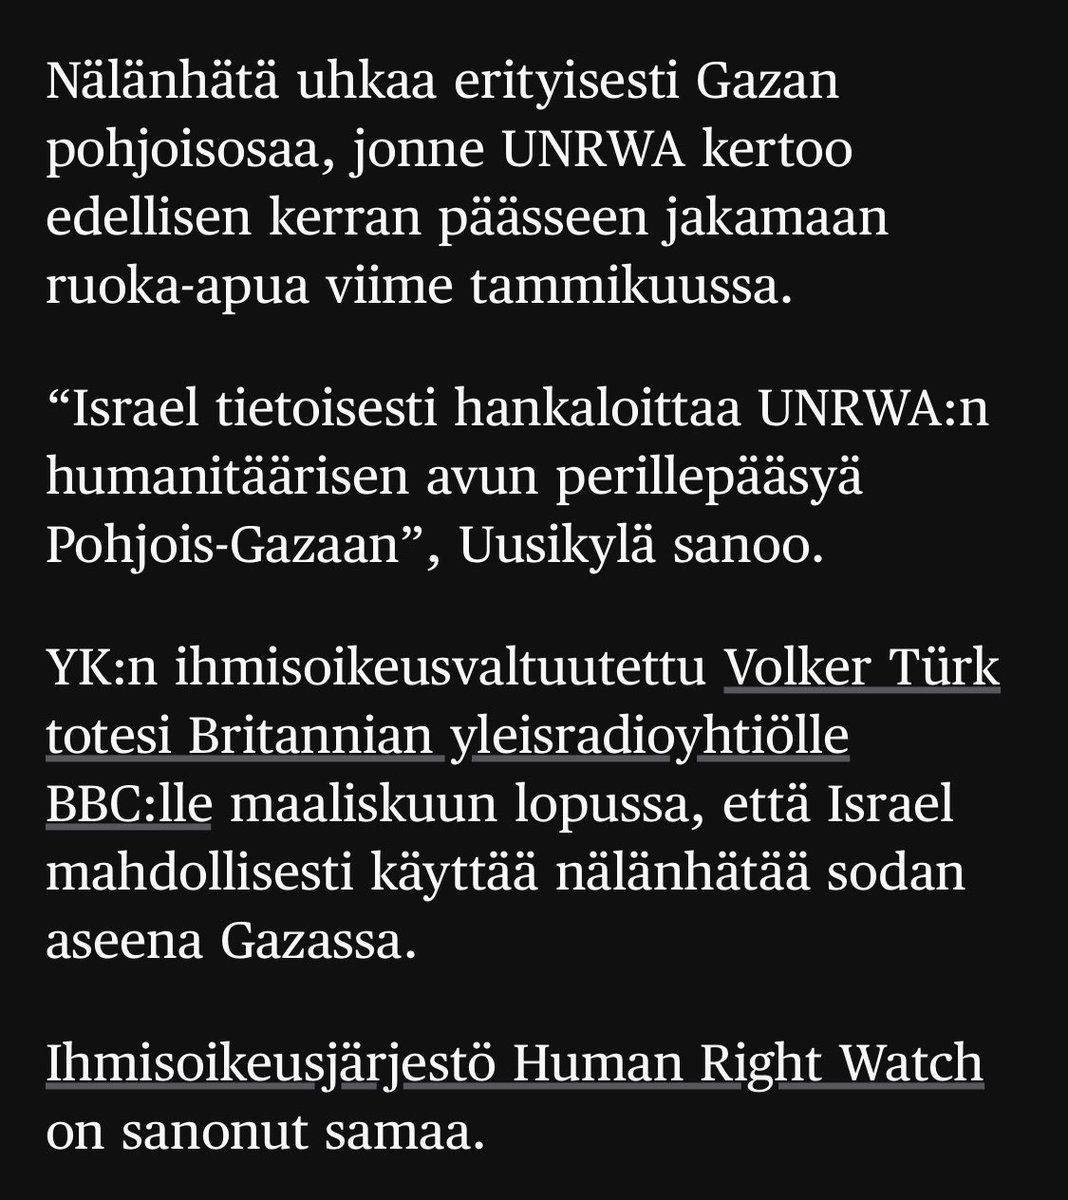 “Israel tietoisesti hankaloittaa UNRWA:n humanitäärisen avun perillepääsyä Pohjois-Gazaan”, Uusikylä sanoo. Tämä on todella raskas syytös. Uusikylä ei varmasti tehnyt sitä kevein perustein. #Gaza